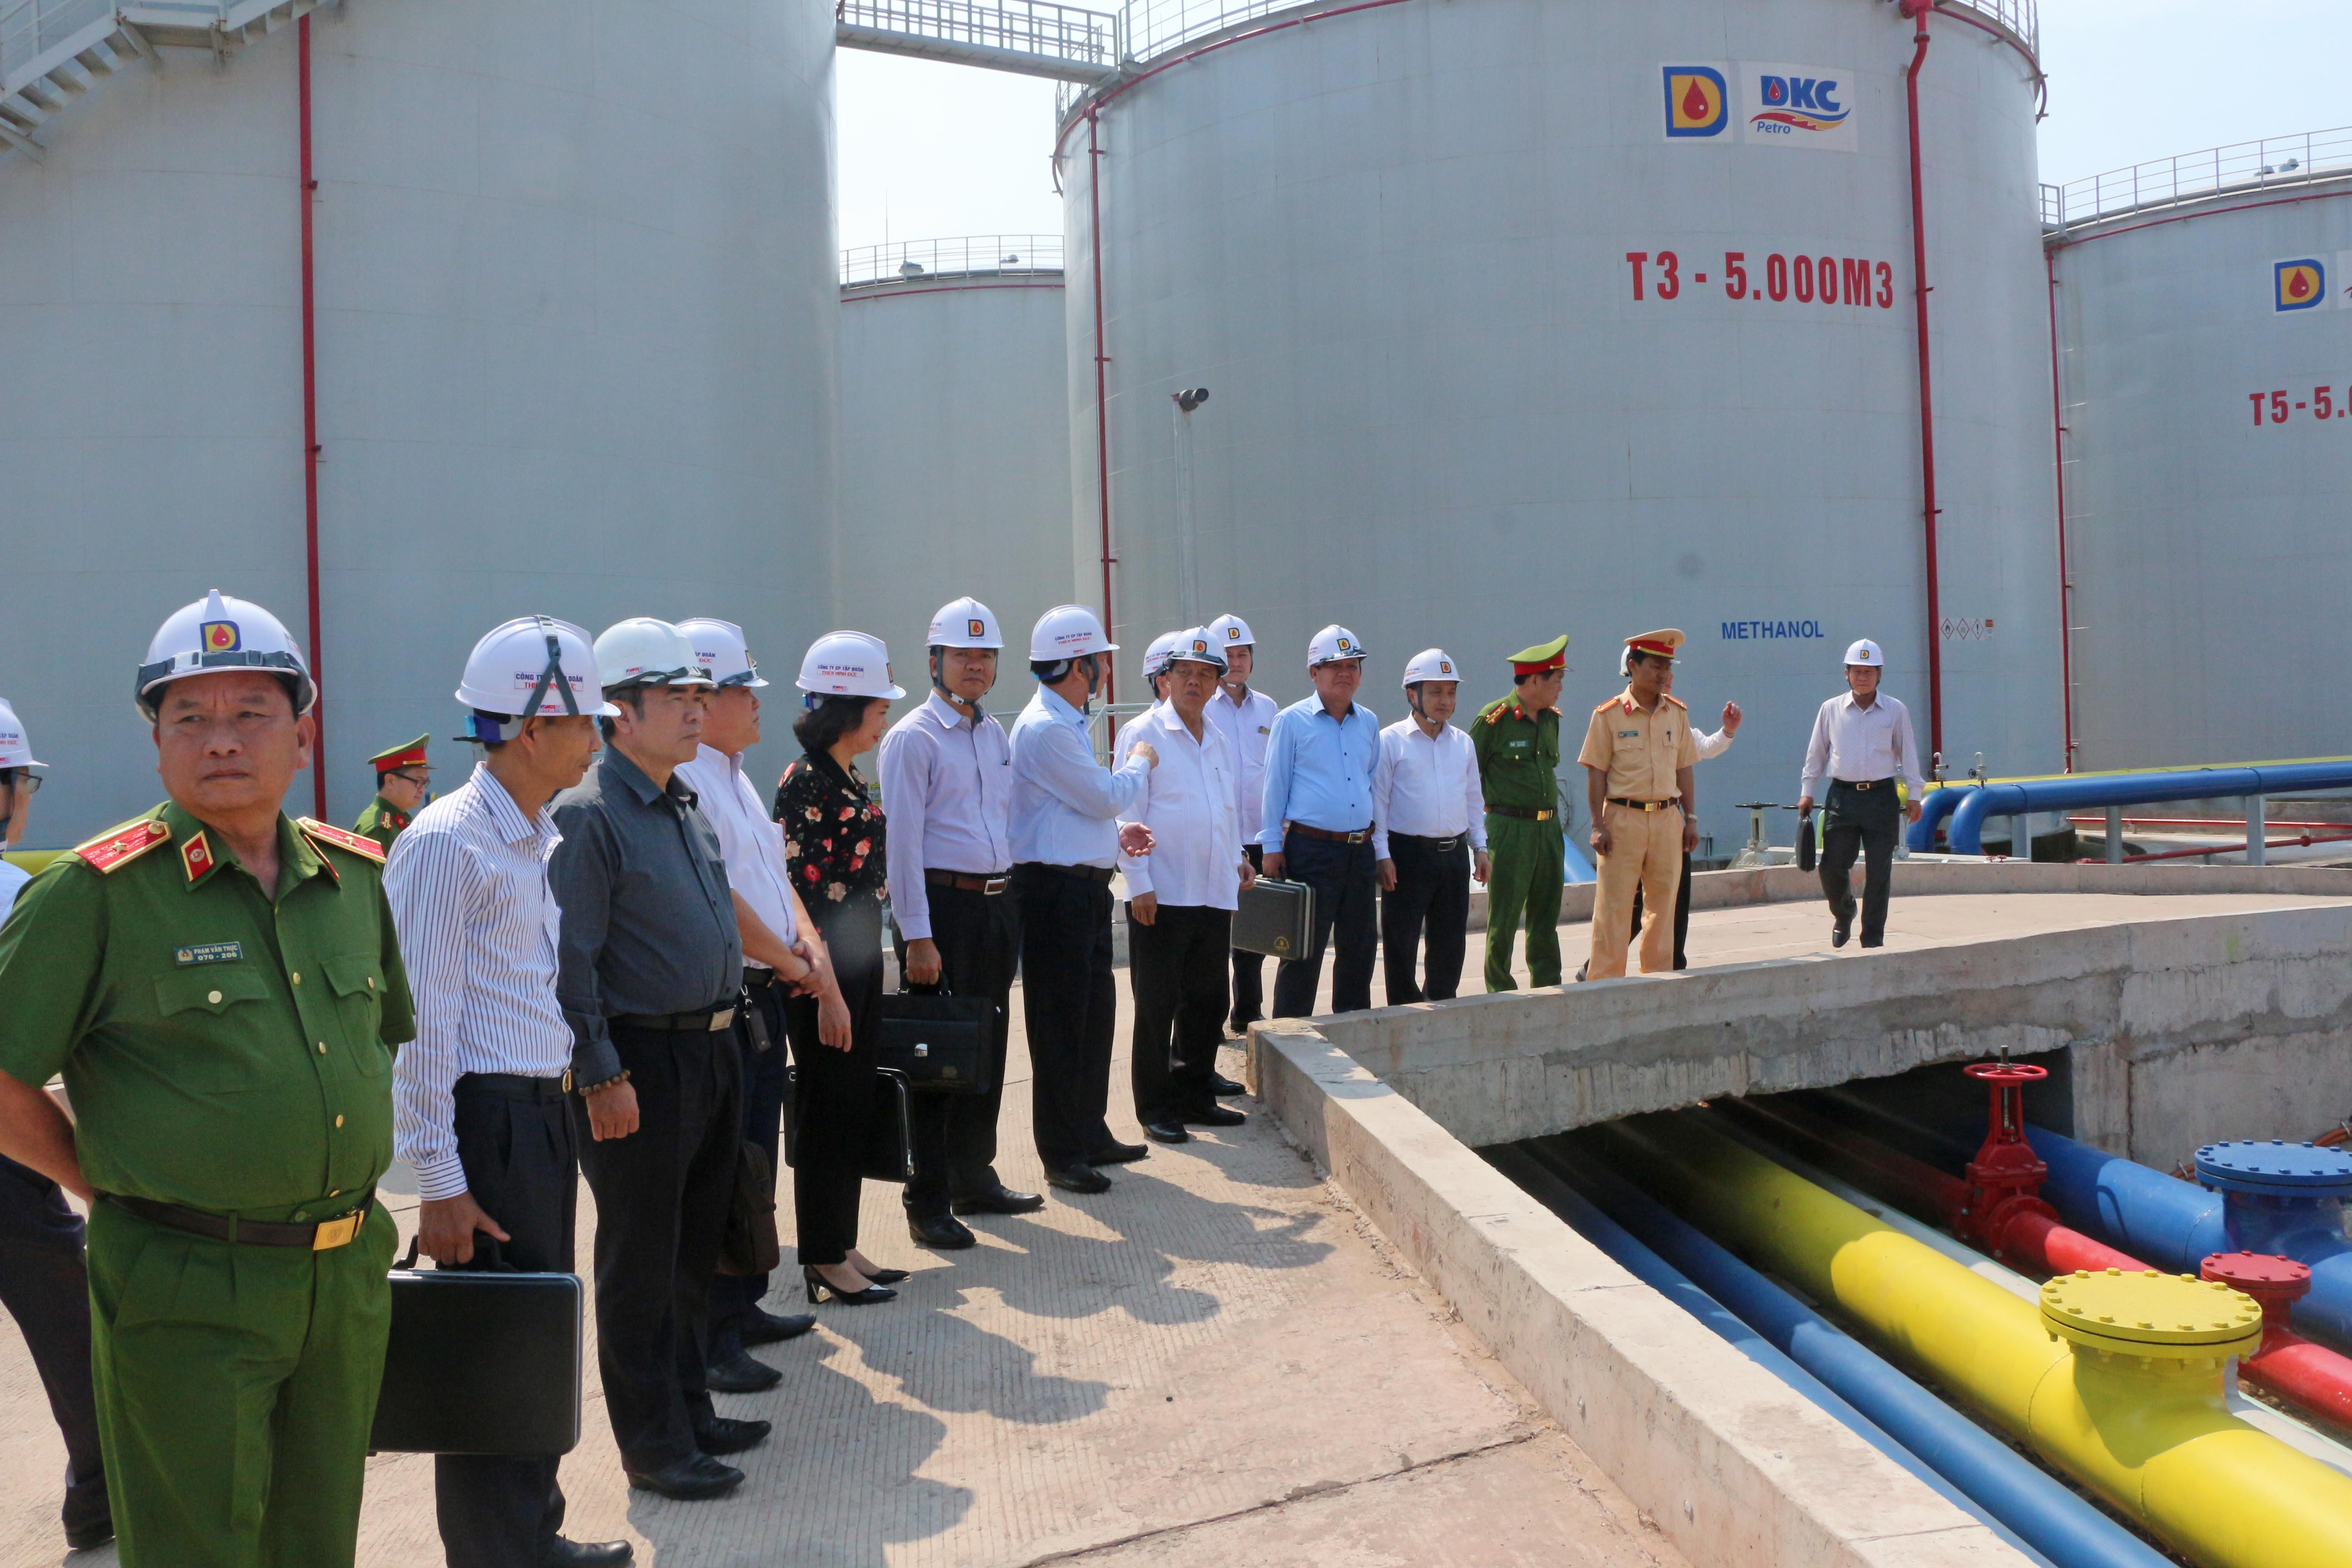 Đoàn giám sát tối cao của Quốc hội khảo sát thực tế tại Tổng kho xăng dầu DKC. Ảnh: Thu Giang